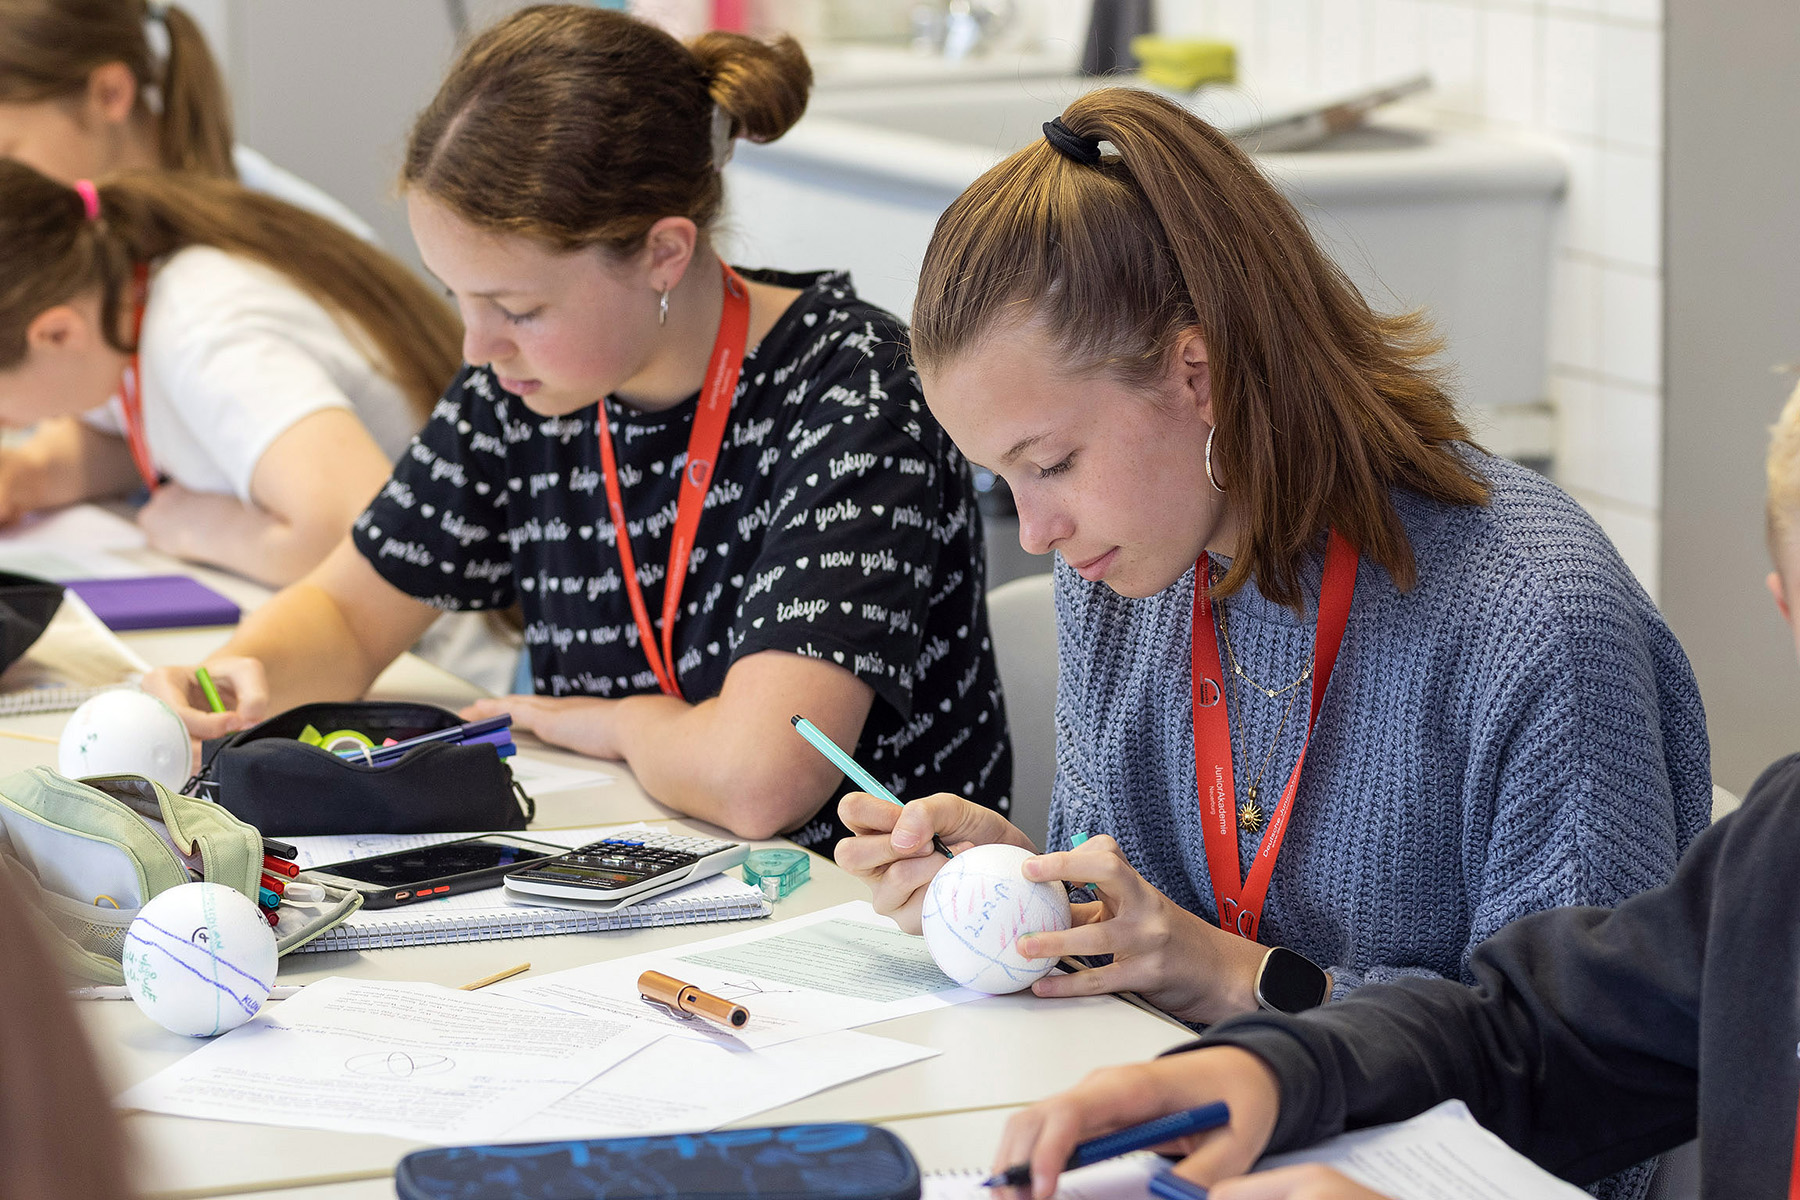 Zwei junge Menschen arbeiten konzentriert an kleinen Kunststoffkugeln, die sie mit Formeln beschriften. Auf dem Tisch vor ihnen liegt viel Arbeitsmaterial.